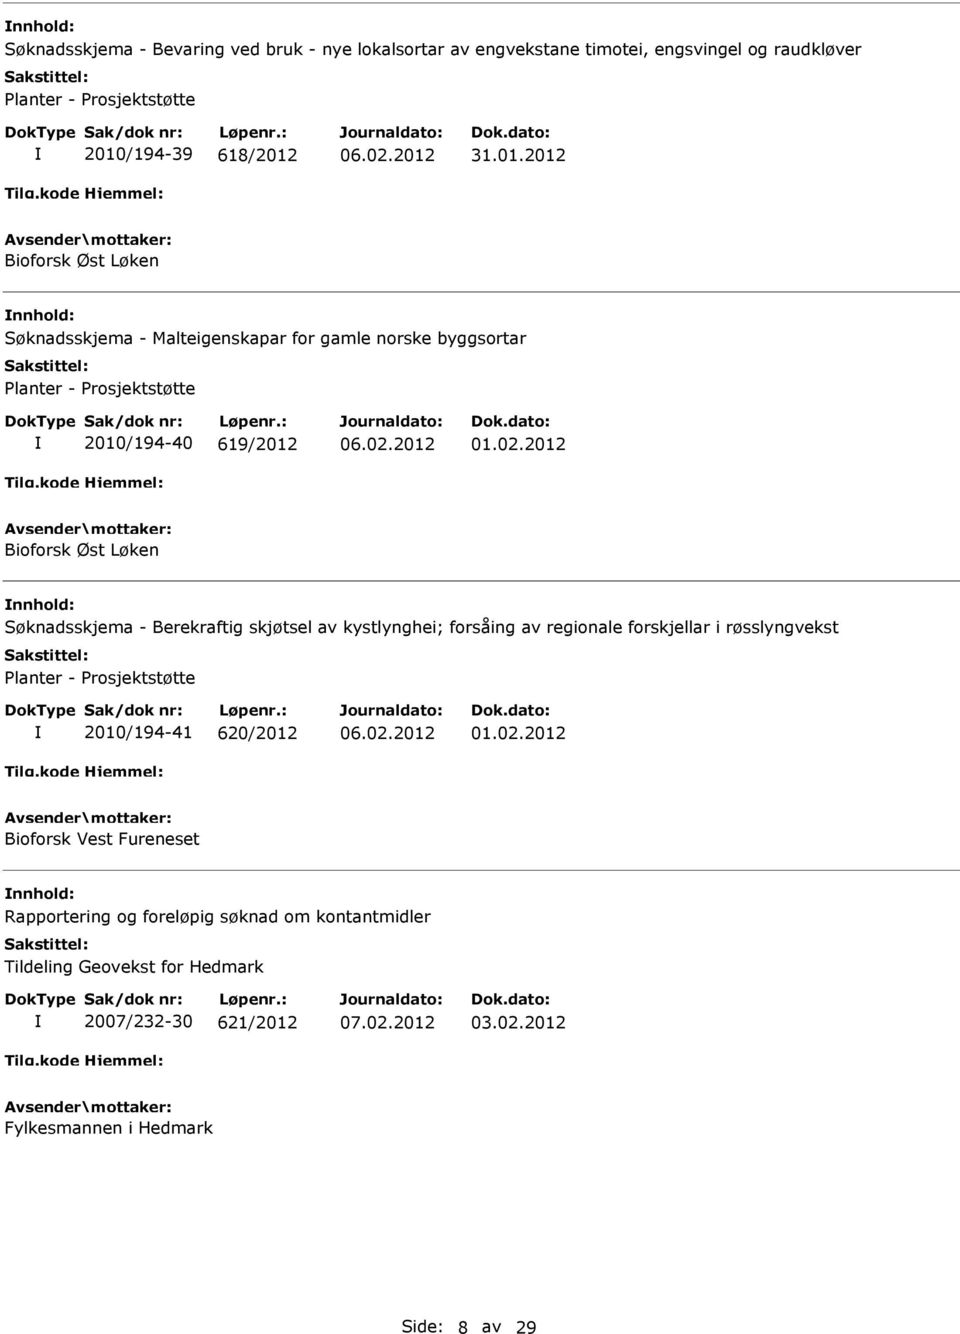 Søknadsskjema - Berekraftig skjøtsel av kystlynghei; forsåing av regionale forskjellar i røsslyngvekst Planter - Prosjektstøtte 2010/194-41 620/2012